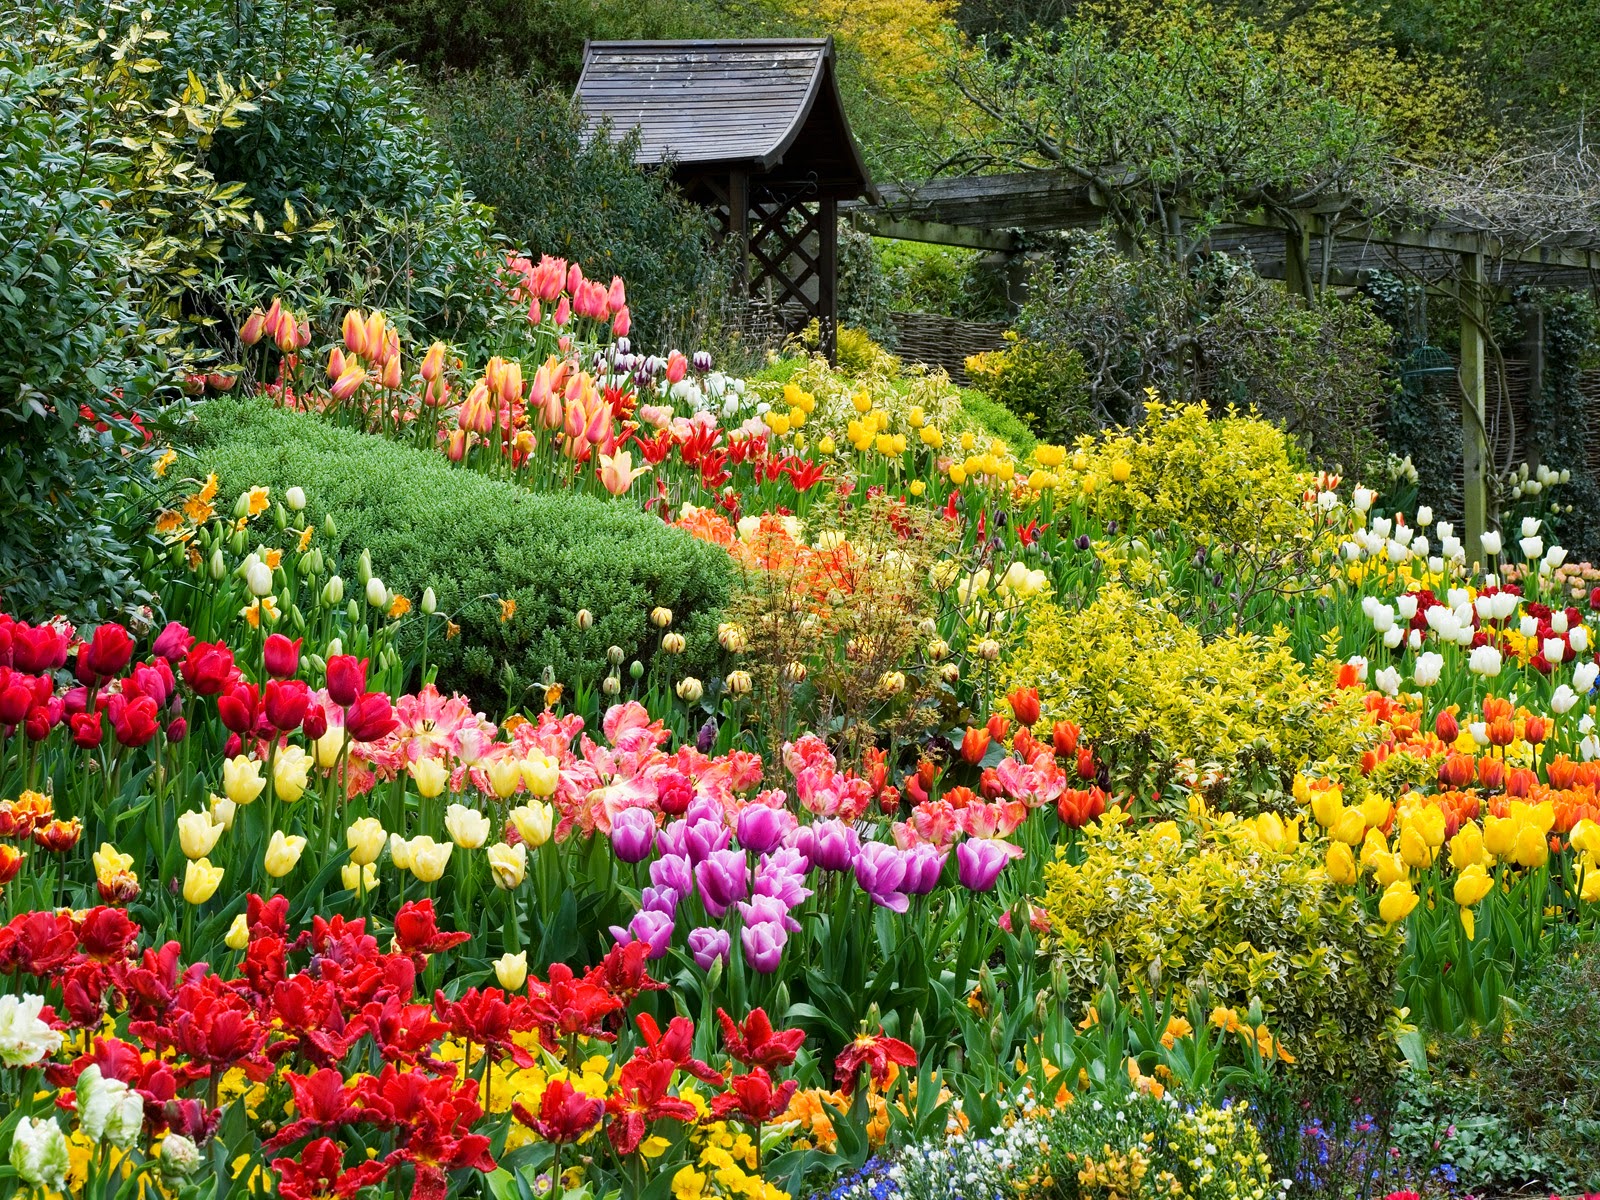 Vườn hoa Đà Lạt là thiên đường của những bông hoa rực rỡ. Hình ảnh sống động về những cánh hoa tuyệt đẹp được phối hợp với khung cảnh tuyệt vời của Đà Lạt sẽ khiến bạn phải đến để thưởng thức.